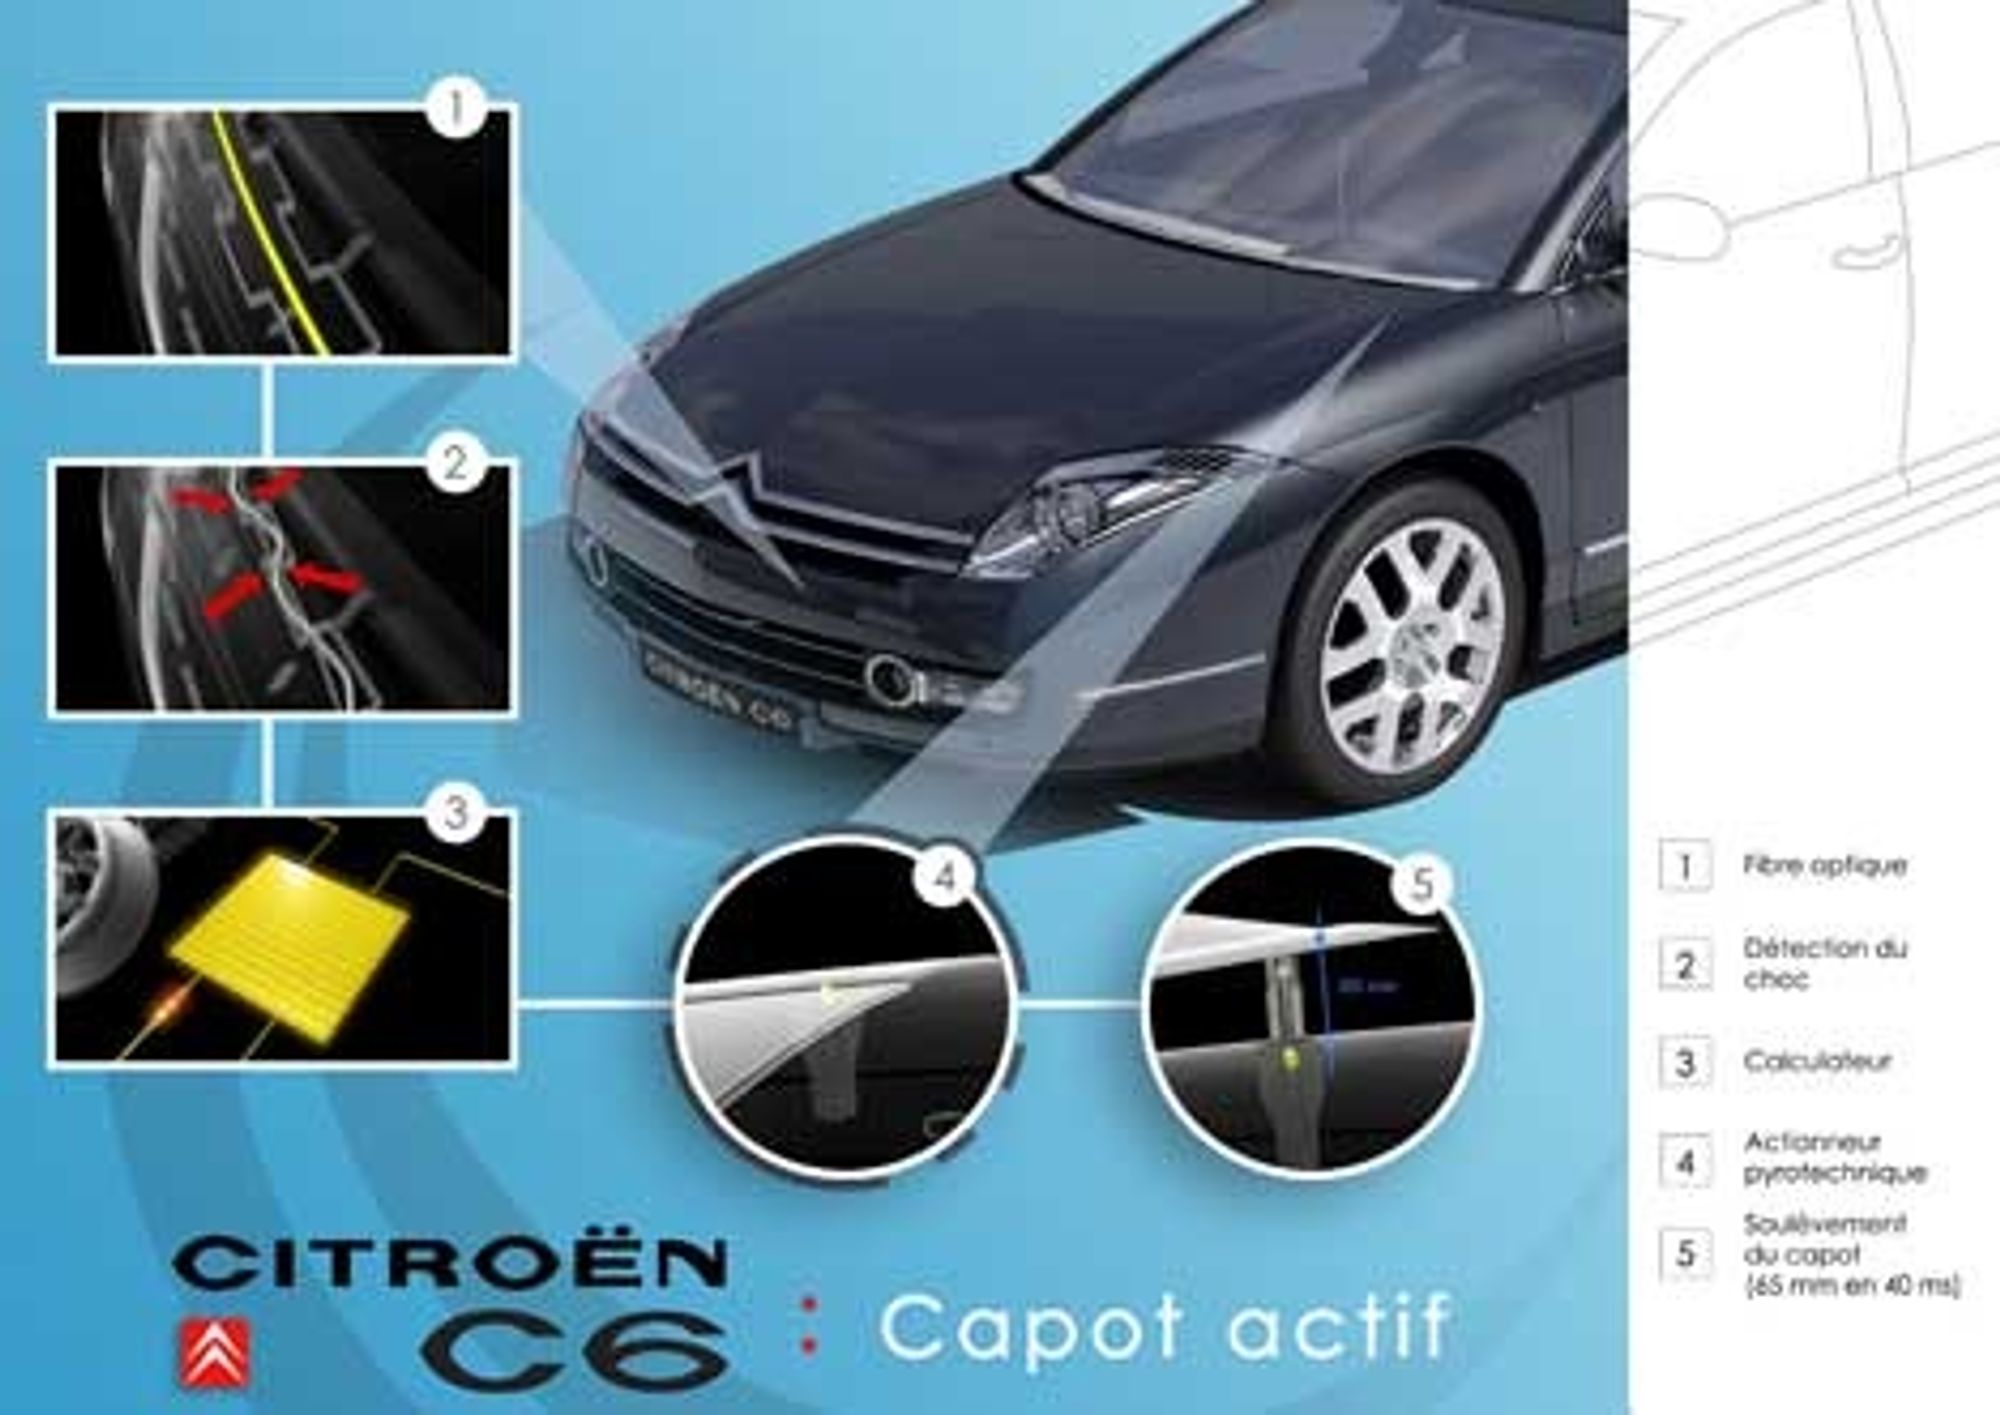 AKTIVT: Motorpanseret i Citroëns nye flaggskip C6 har gitt fabrikken en ettertraktet sikkerhetspris. Panseret er slik konstruert og bygget at det bedre beskytter fotgjengere ved en eventuell kollisjon. Tallene i tegningen indikerer 1)optisk fiber, 2) kollisjonssensor, 3) datamaskin, 4) pyroteknisk aktuator, 5) panseret løftes 65 millimeter.